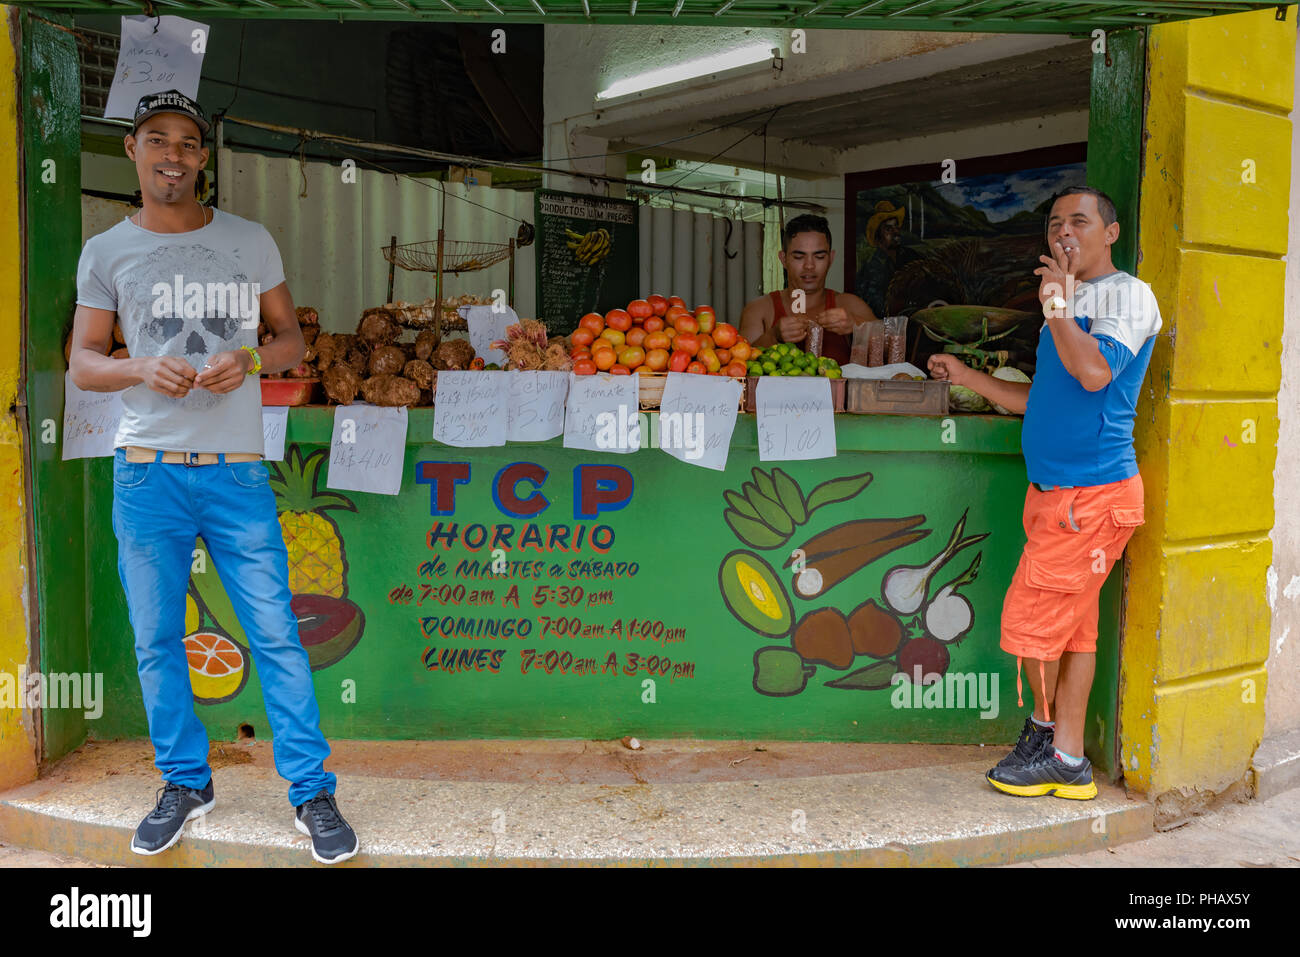 L'Avana, Cuba / Marzo 21, 2016: tre uomini cubano a frutta stand: uno sacchi dadi, uno fuma una sigaretta, e il terzo sorrisi per la fotocamera. Foto Stock